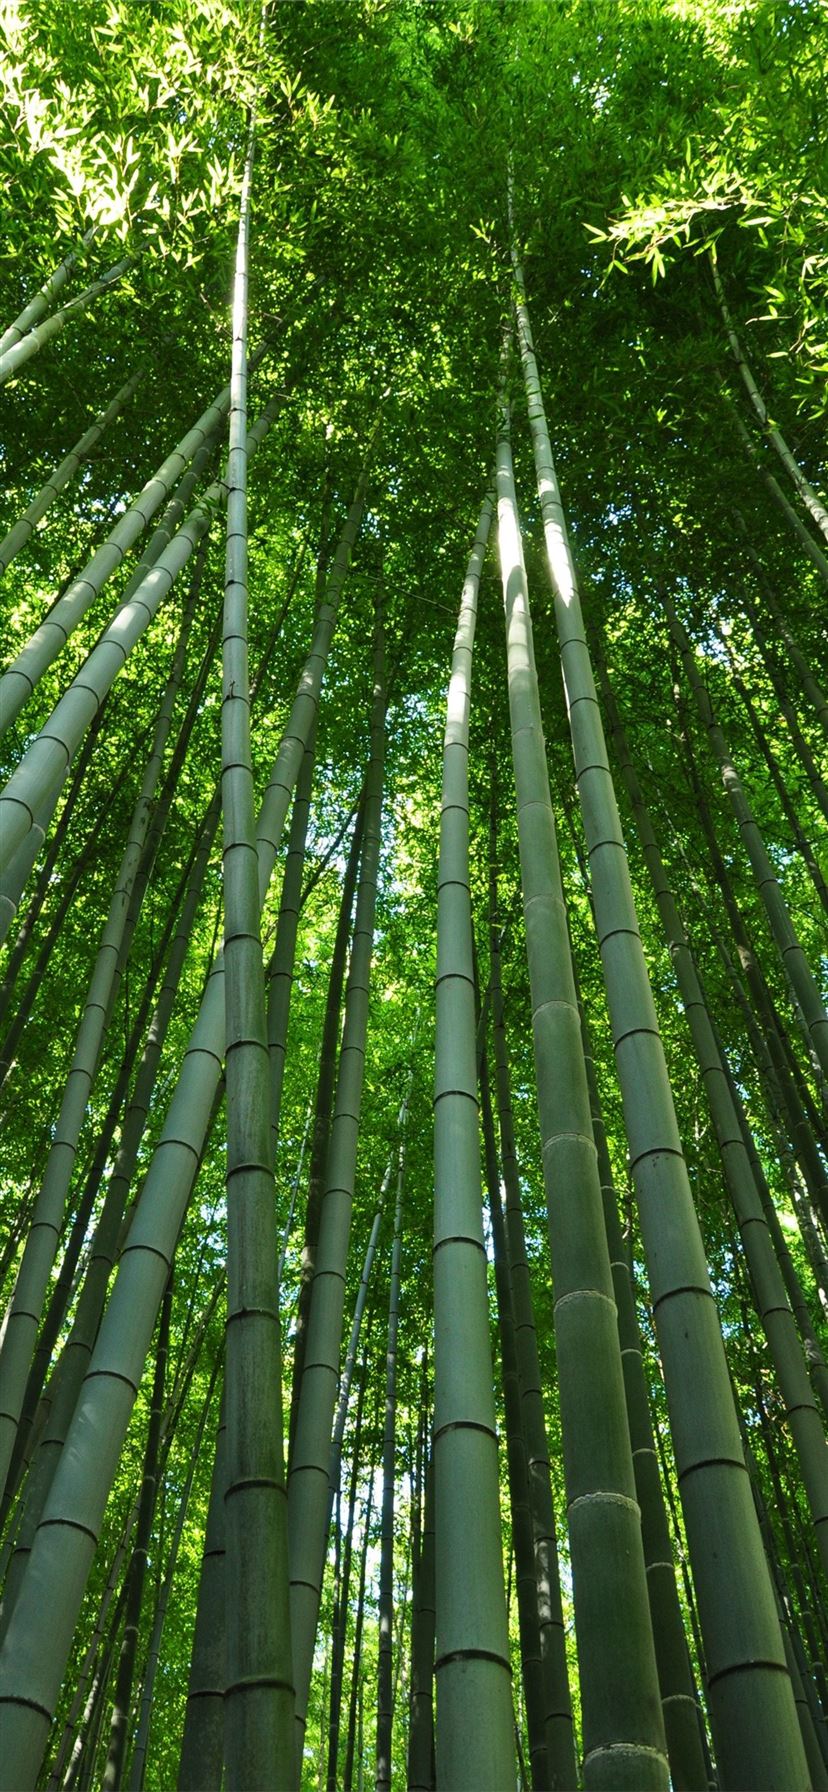 دانلود عکس رایگان از درختان بامبو از نمای پایین 